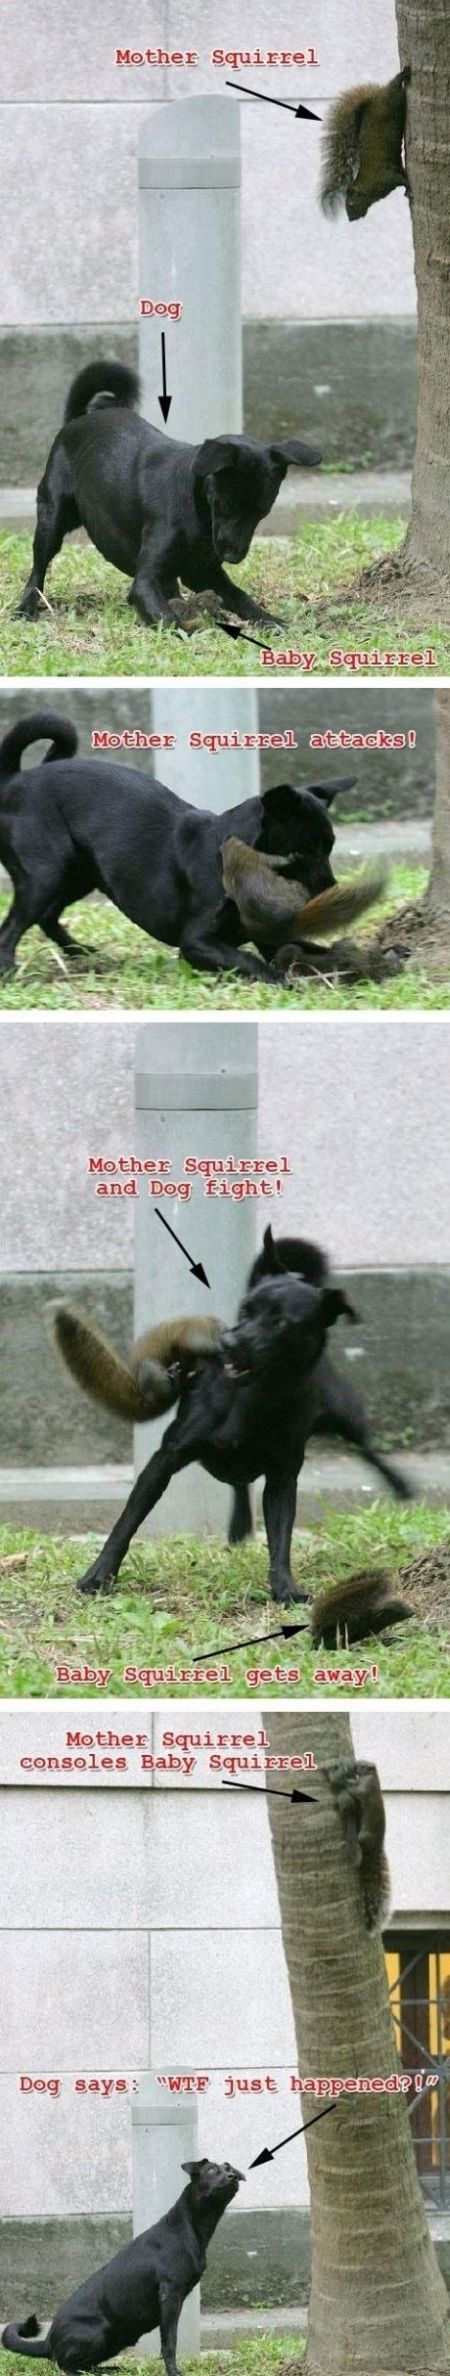 dog versus squirrel mum